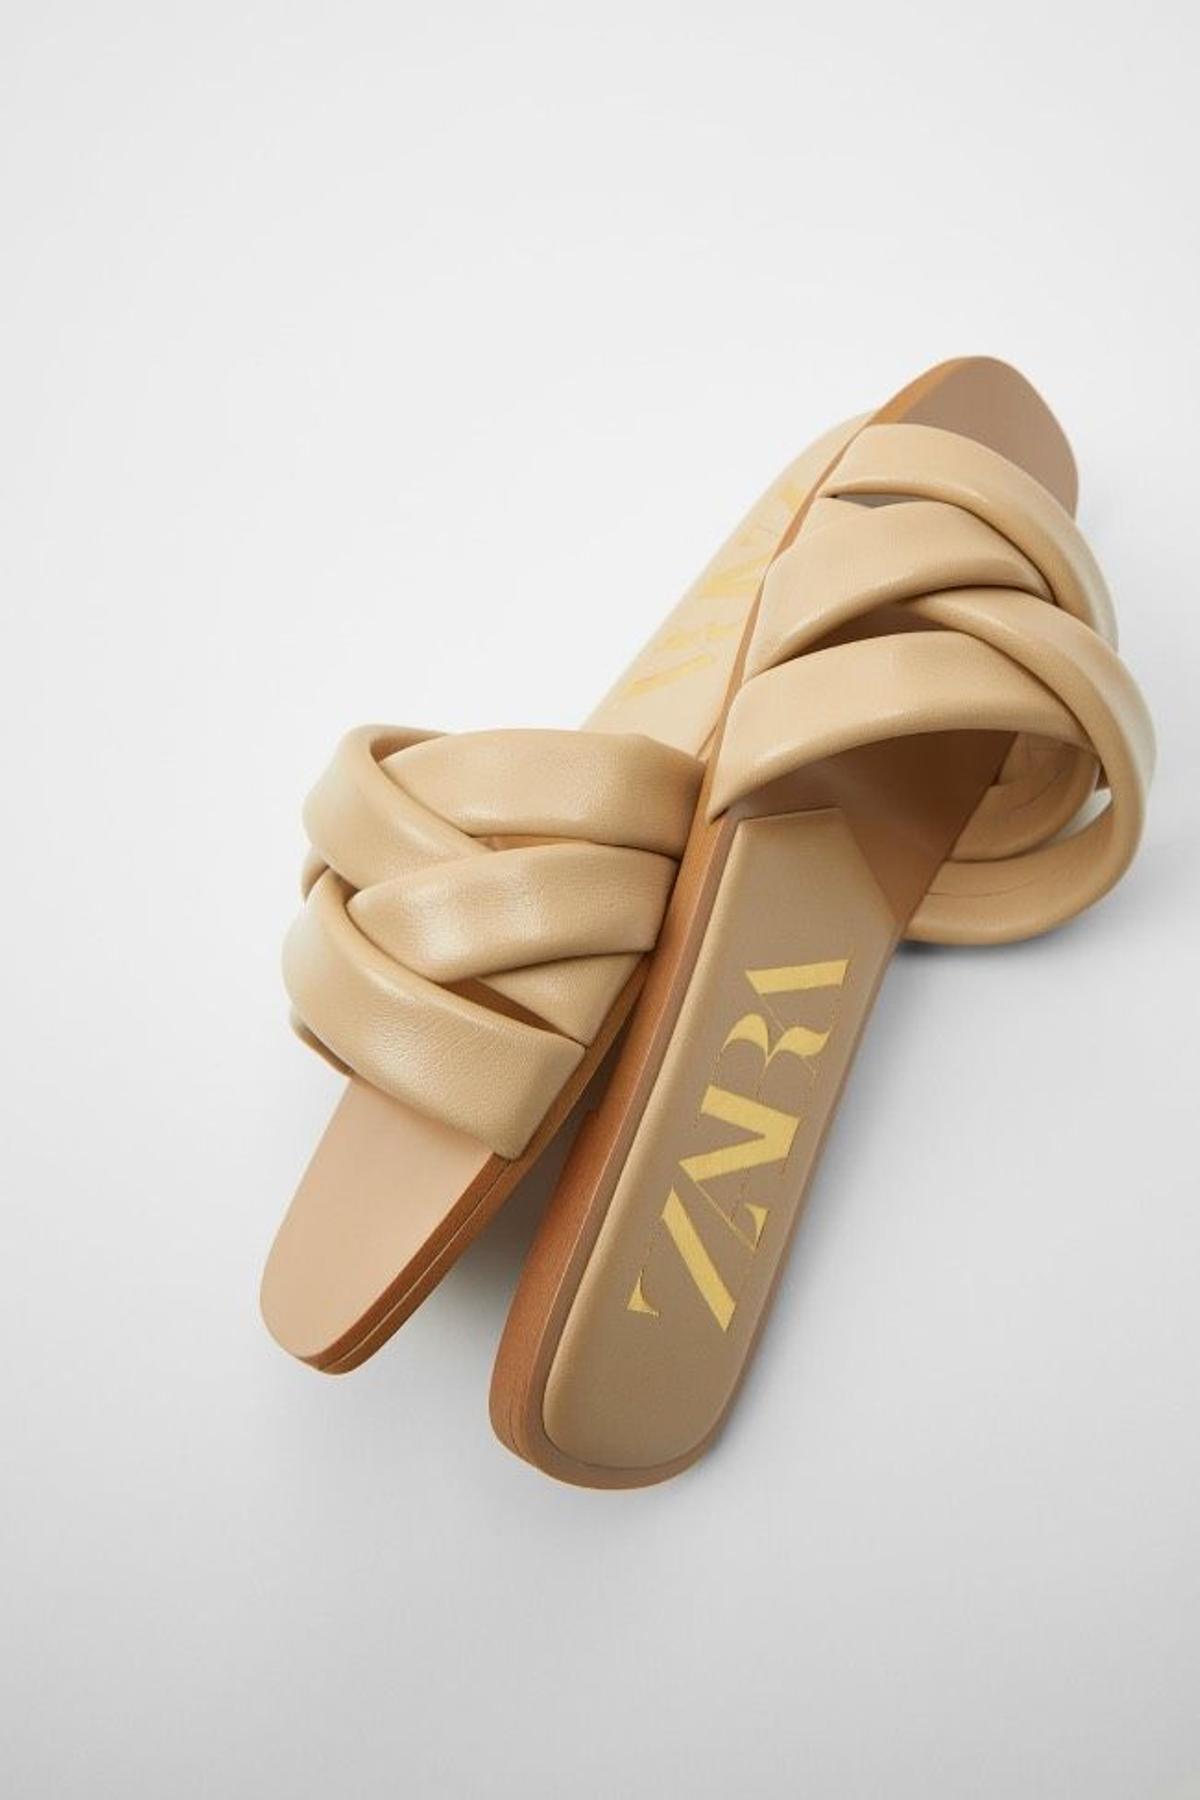 Sandalias planas en color beige de Zara